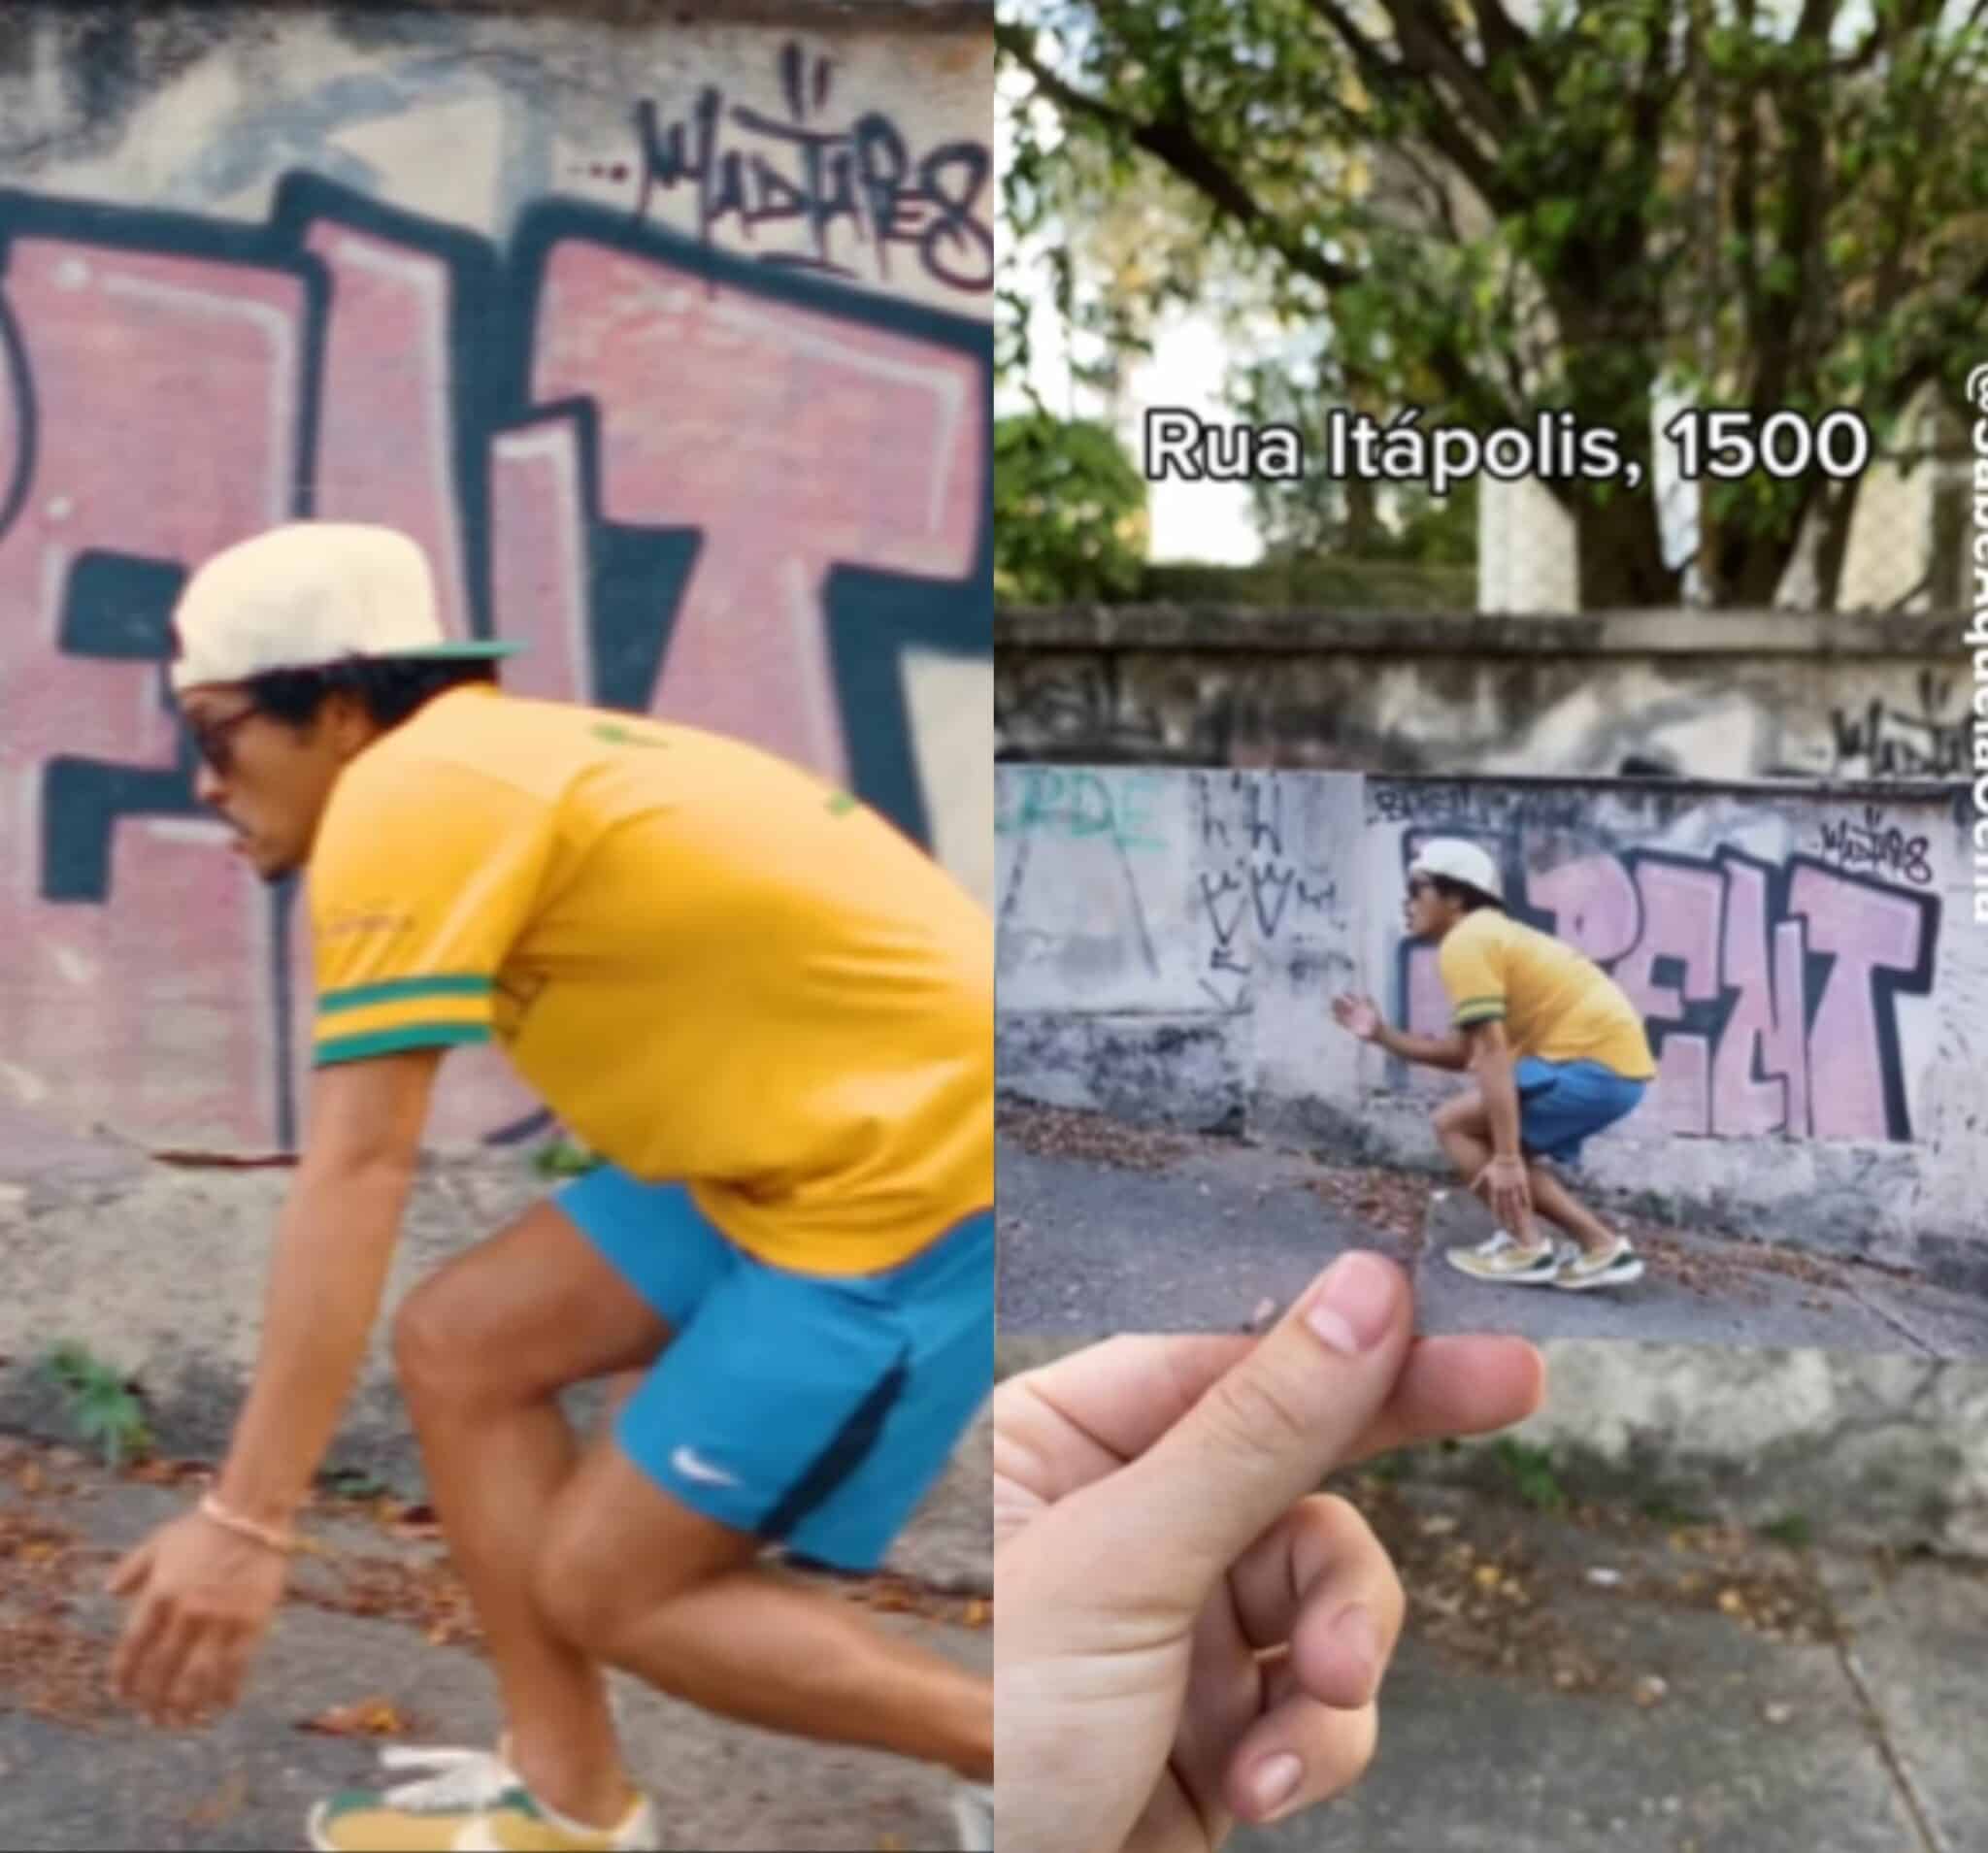 Brasileiros revelam locais de São Paulo onde Bruno Mars gravou vídeo 2